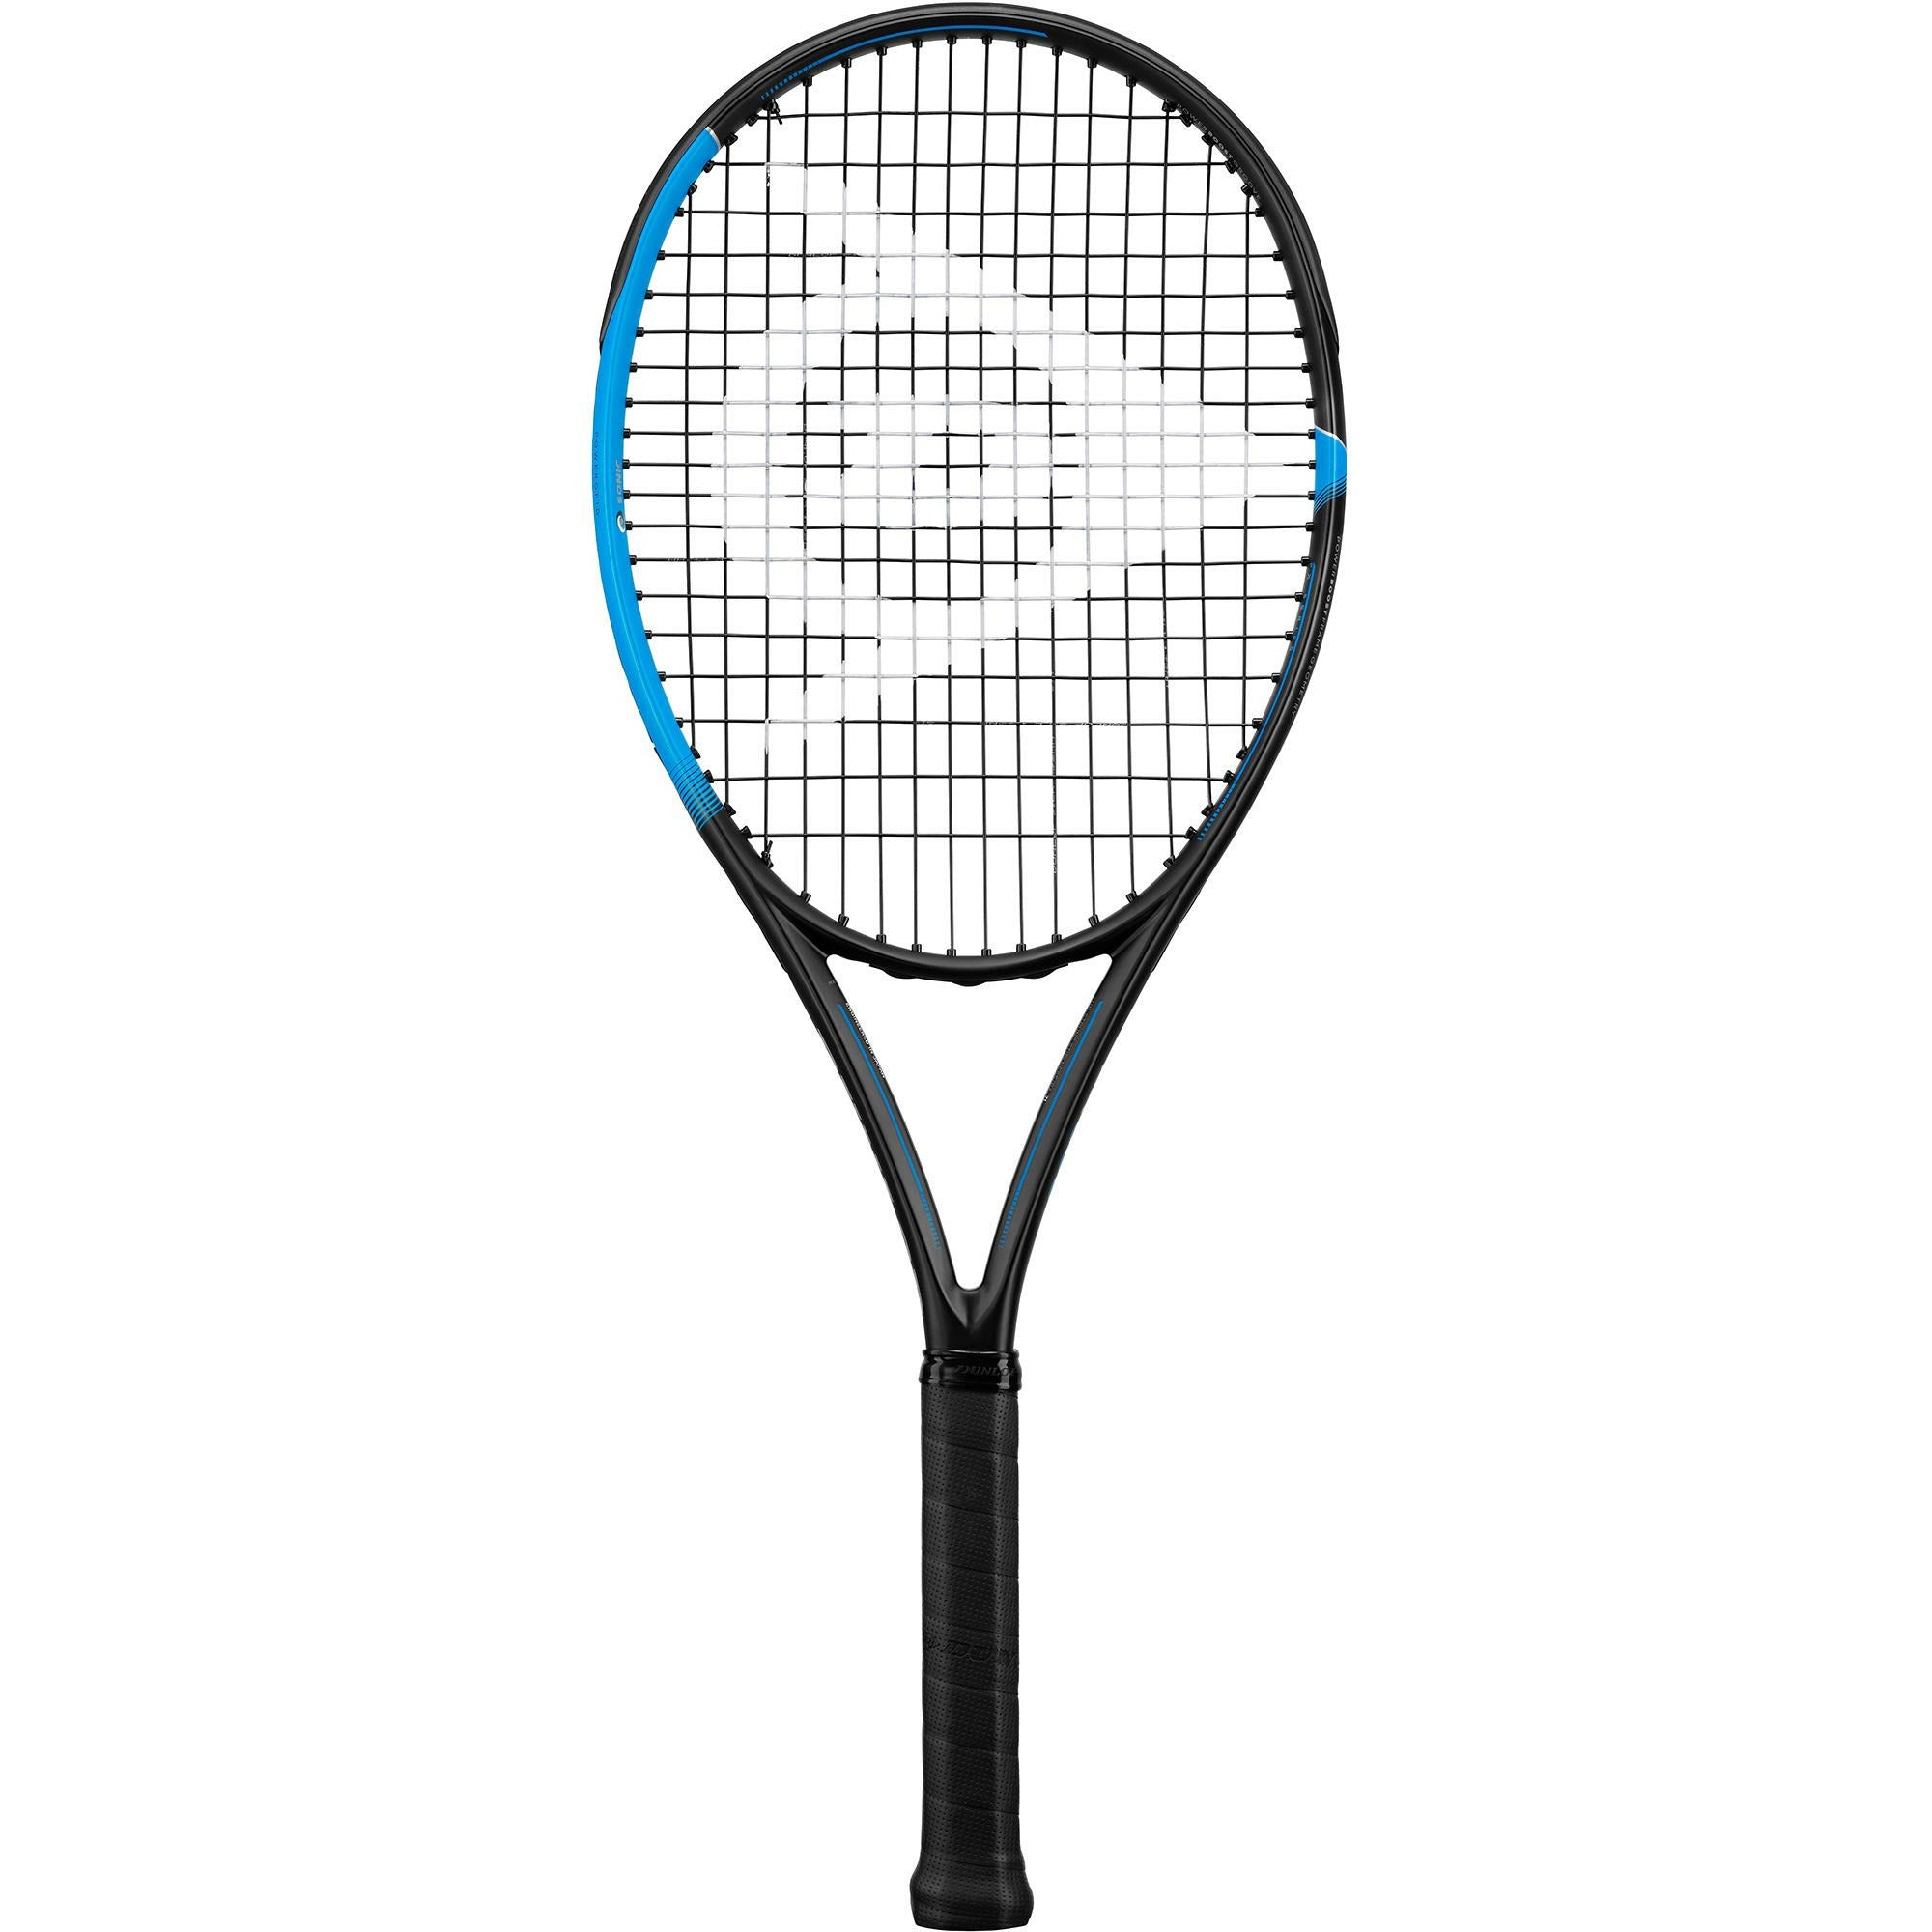 Dunlop FX 500 LS Tennis Racket [Frame Only]